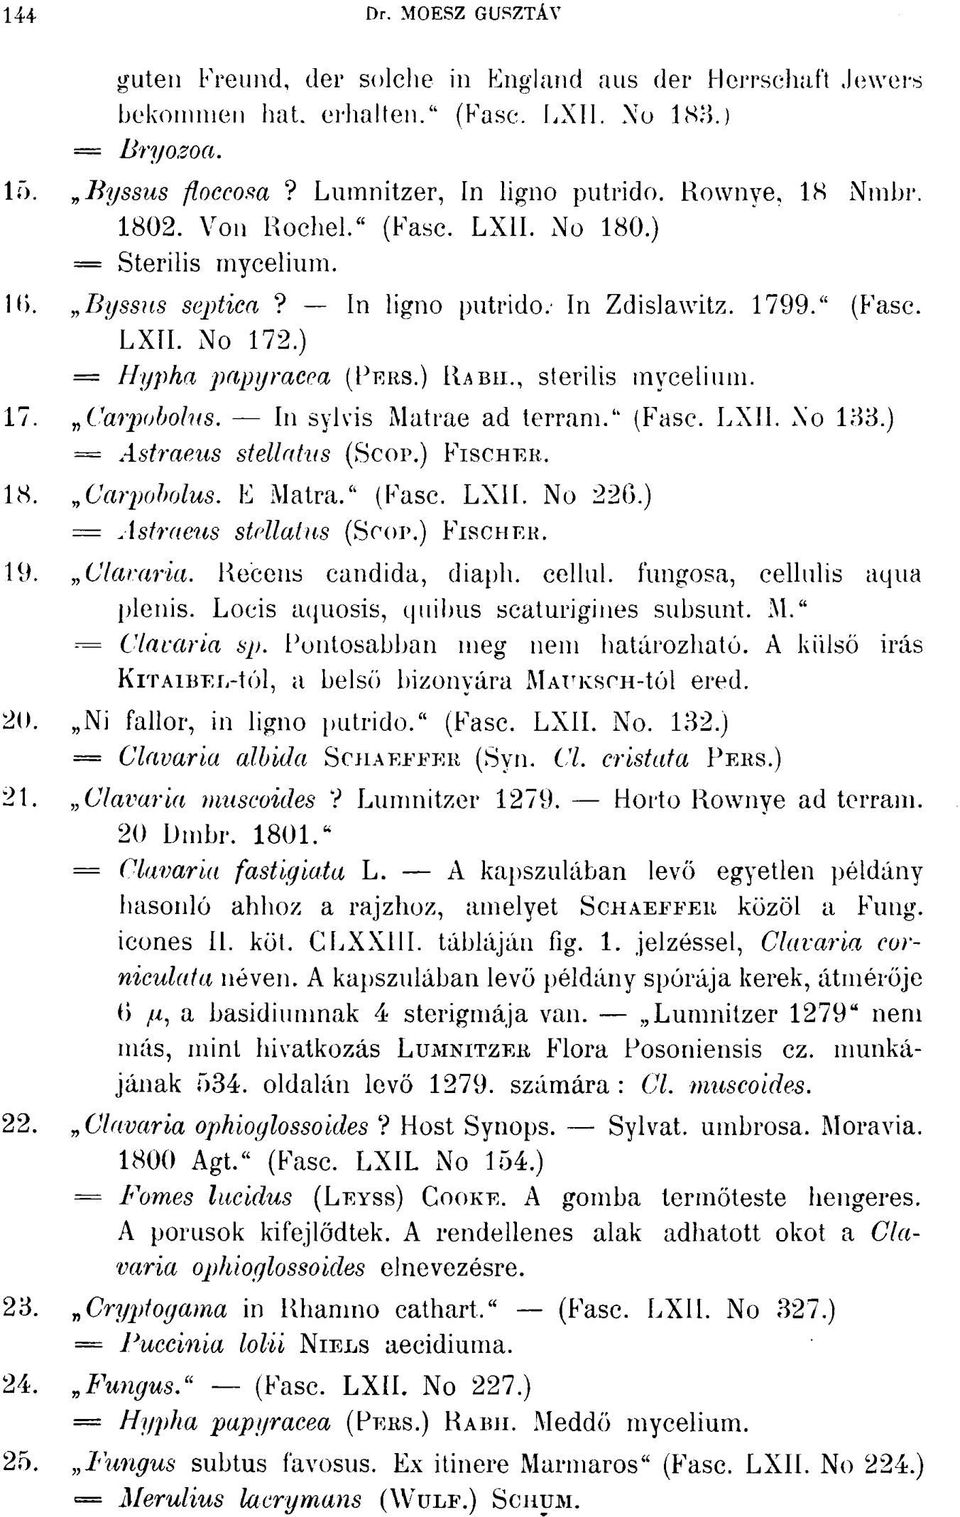 , sterilis mycelium. 17. Carpobolus. - In sylvis Matrae ad terram." (Fase. LXII. No 133.) = Astraeus stellatus (SCOP.) FISCHER. 18. Carpobolus. E Matra." (Fase. LXII. No 226.